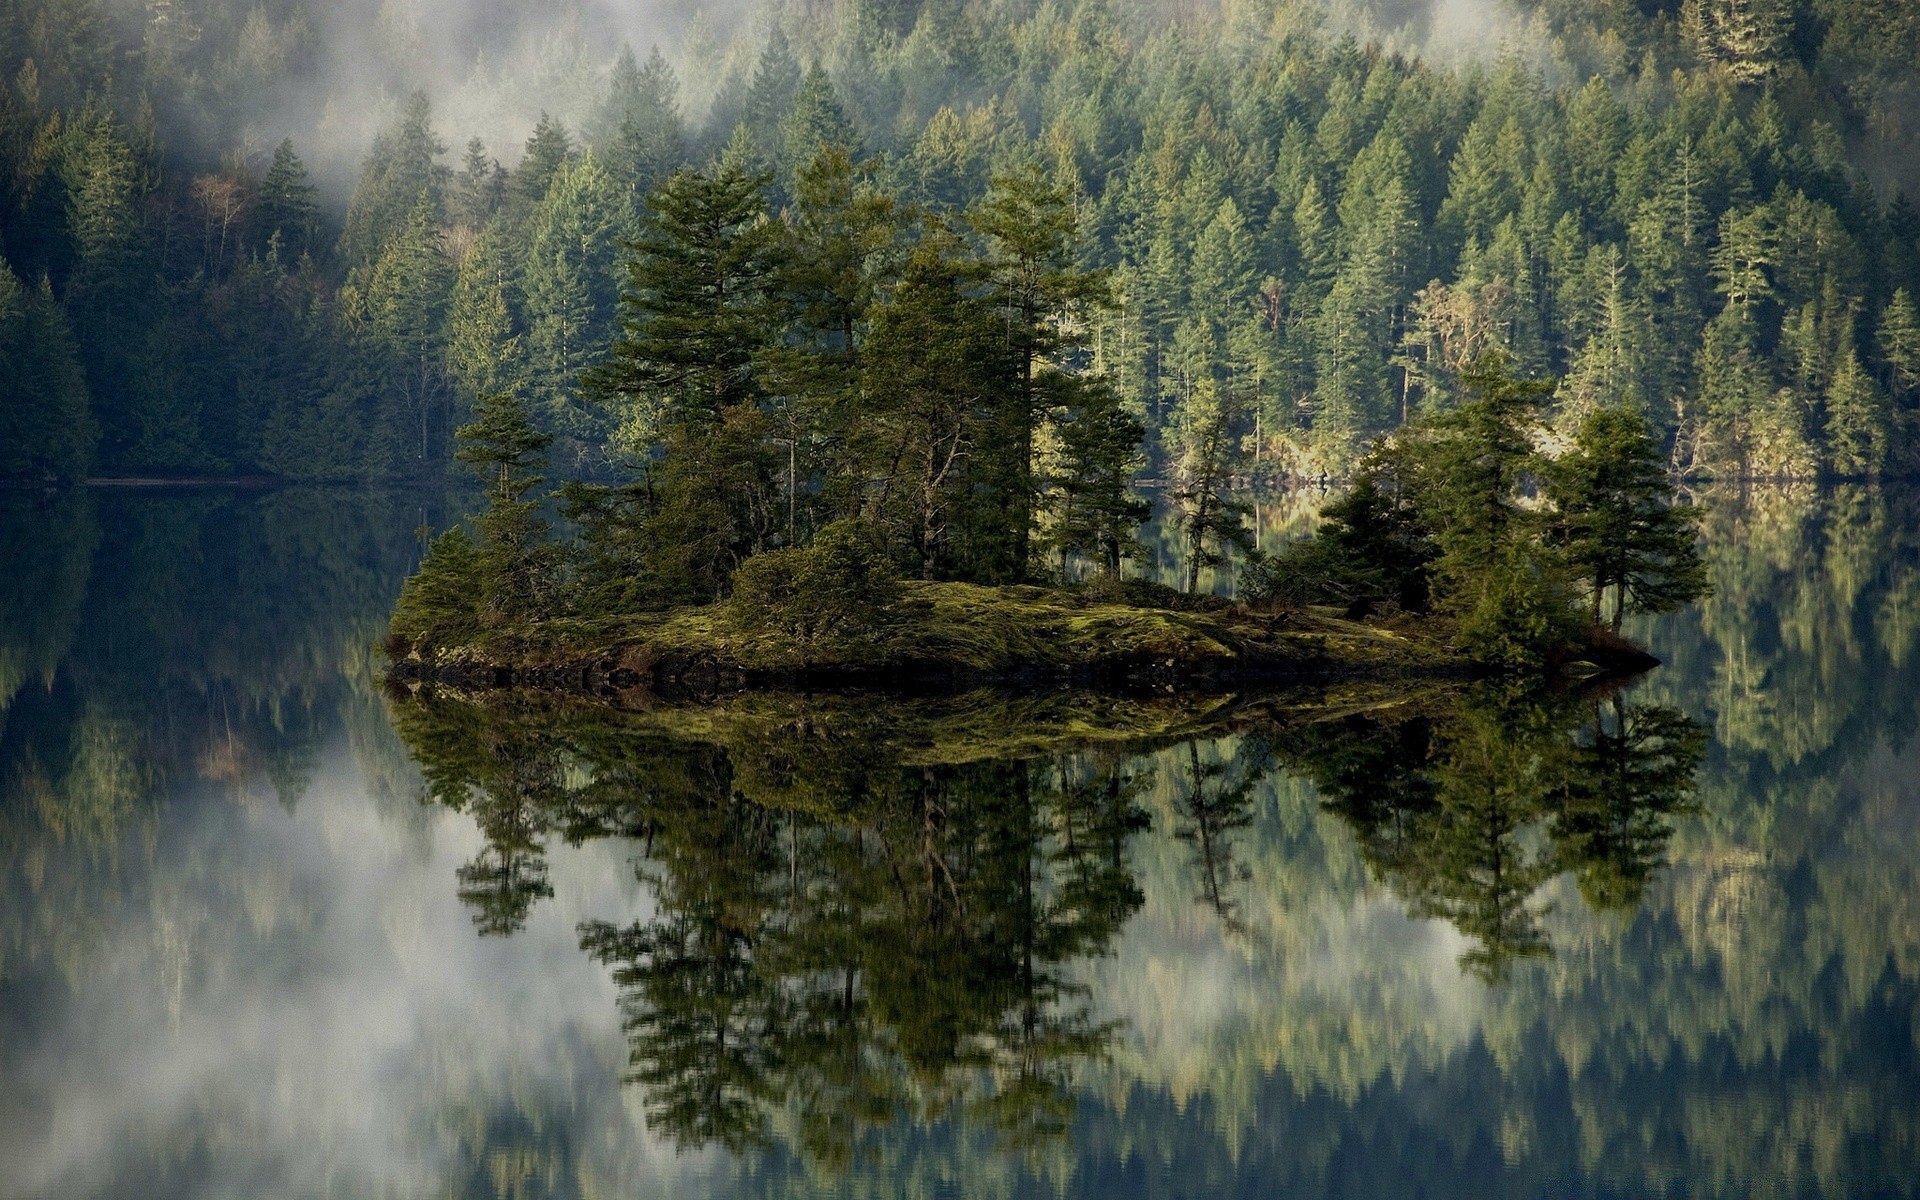 озера воды пейзаж древесины дерево хвойные река отражение природа живописный на открытом воздухе эвергрин путешествия горы дневной свет небо среды осень